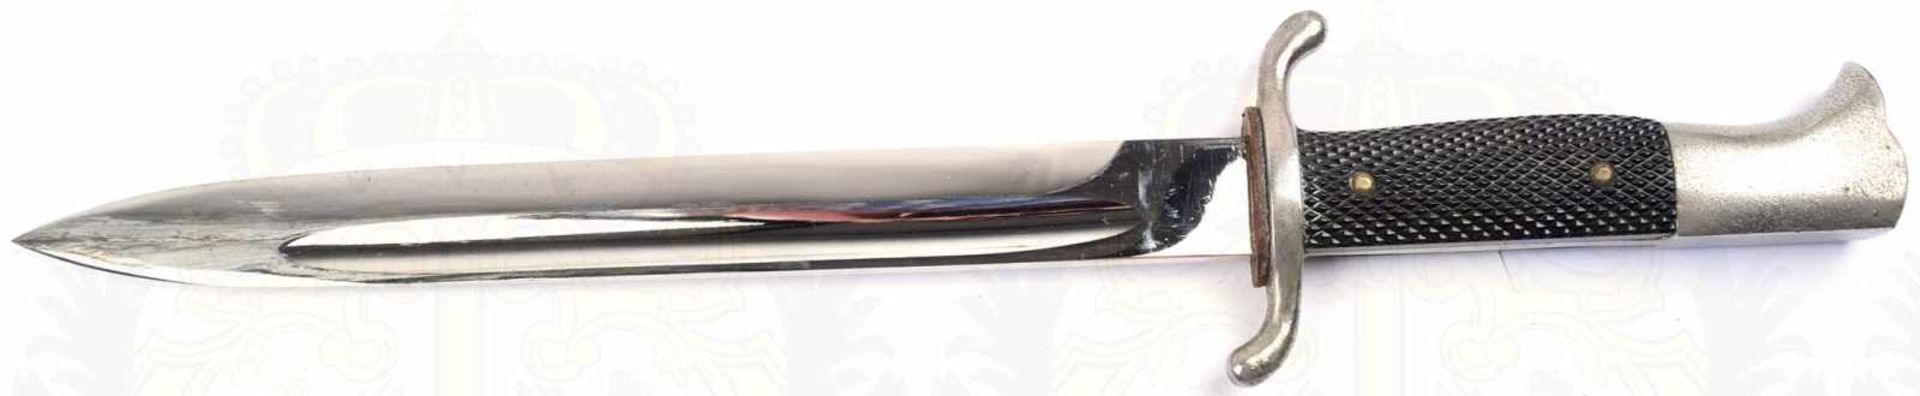 FEUERWEHR-FASCHINENMESSER, vernickelte Klinge, L. 25cm, Stoßleder, vernickelte Griffteile aus - Bild 2 aus 4